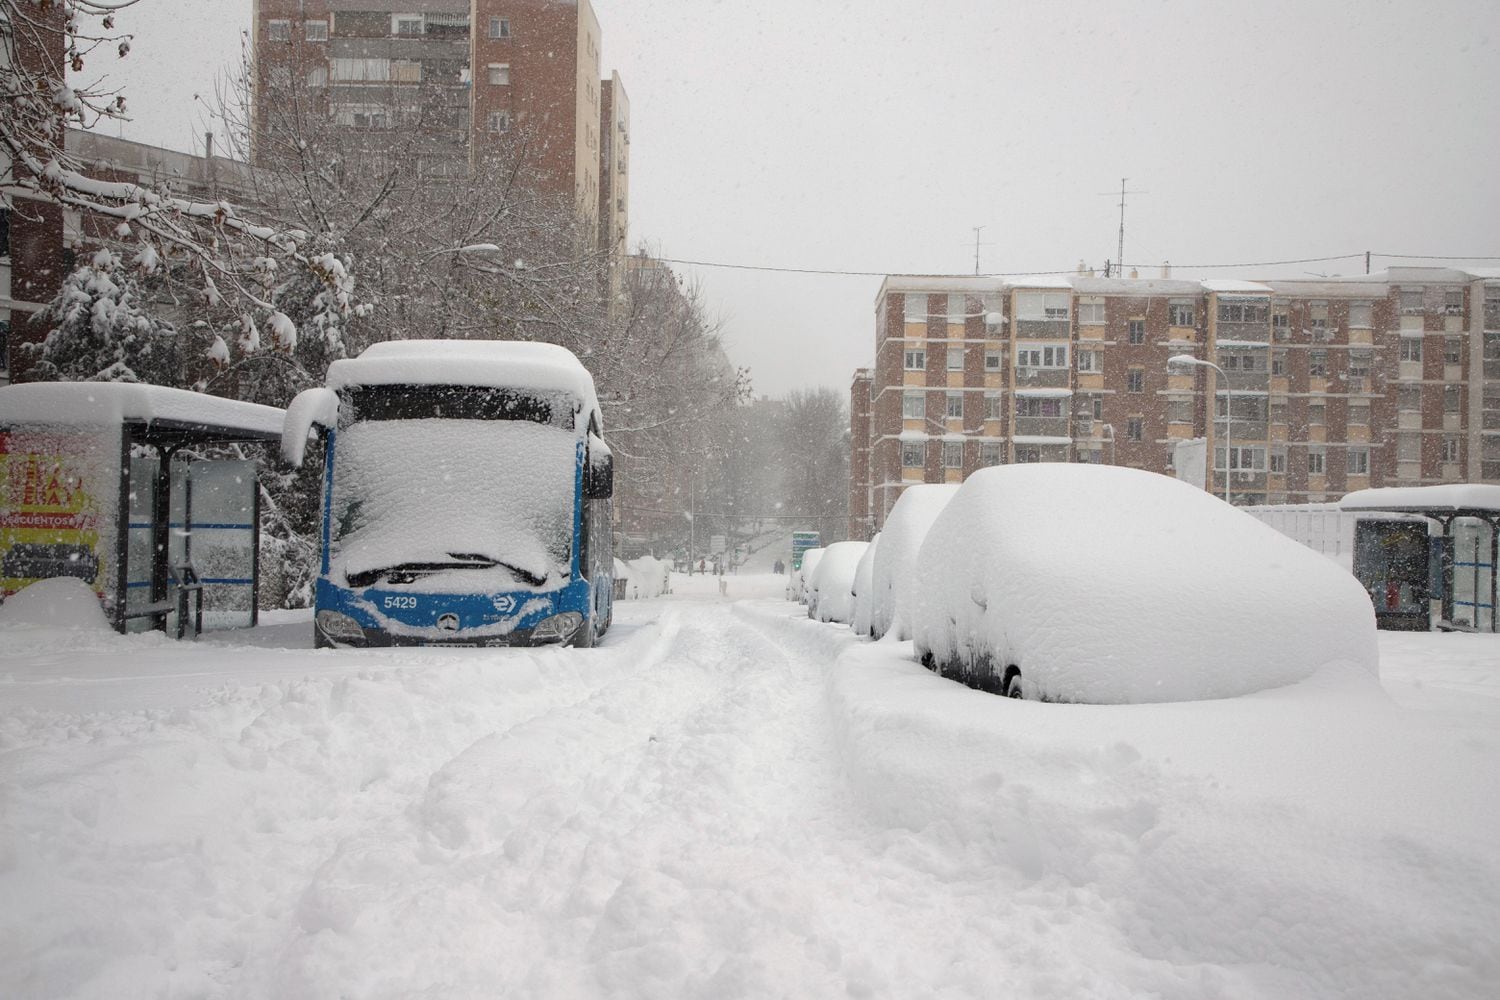 Un autobús de línea de la capital, cubierto por la nieve y abandonado, el sábado en una calle del barrio de La Elipa.